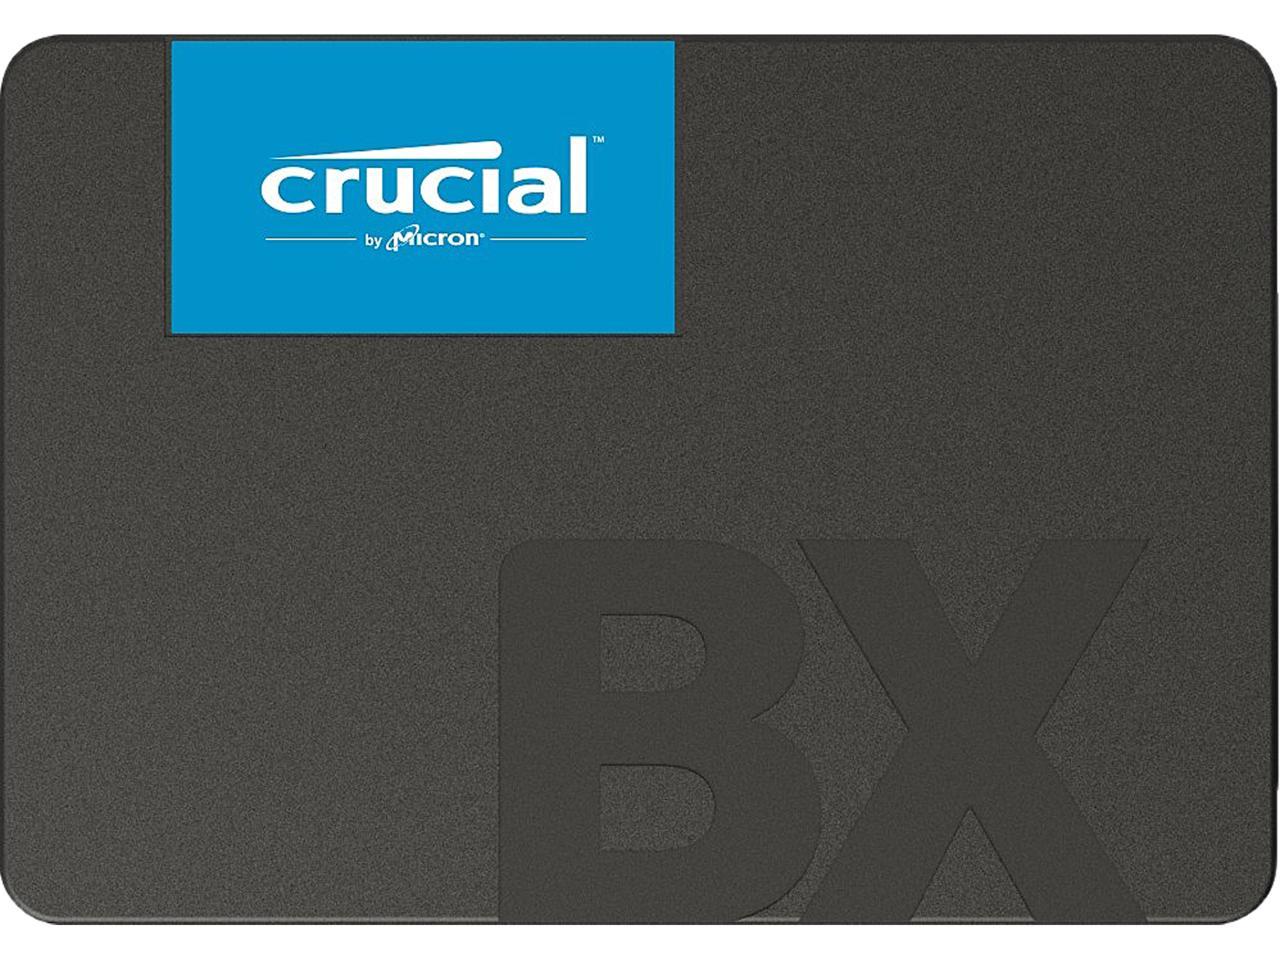 1TB Crucial BX500 2.5" SSD $58